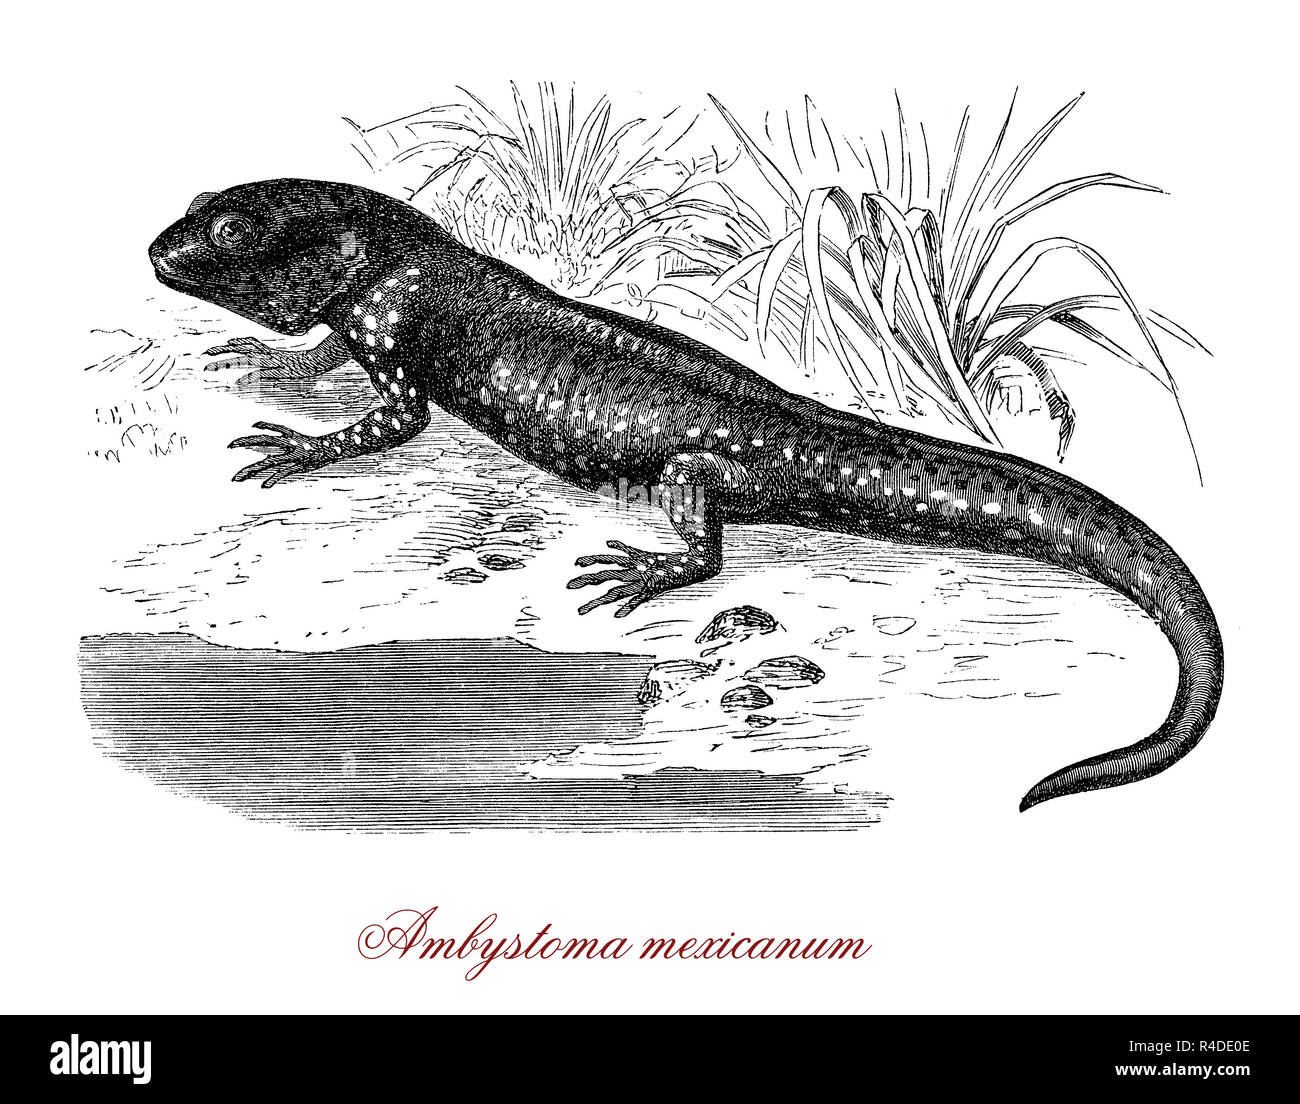 Vintage illustration d'axolotol, salamandre mexicaine et les espèces en voie de disparition Banque D'Images